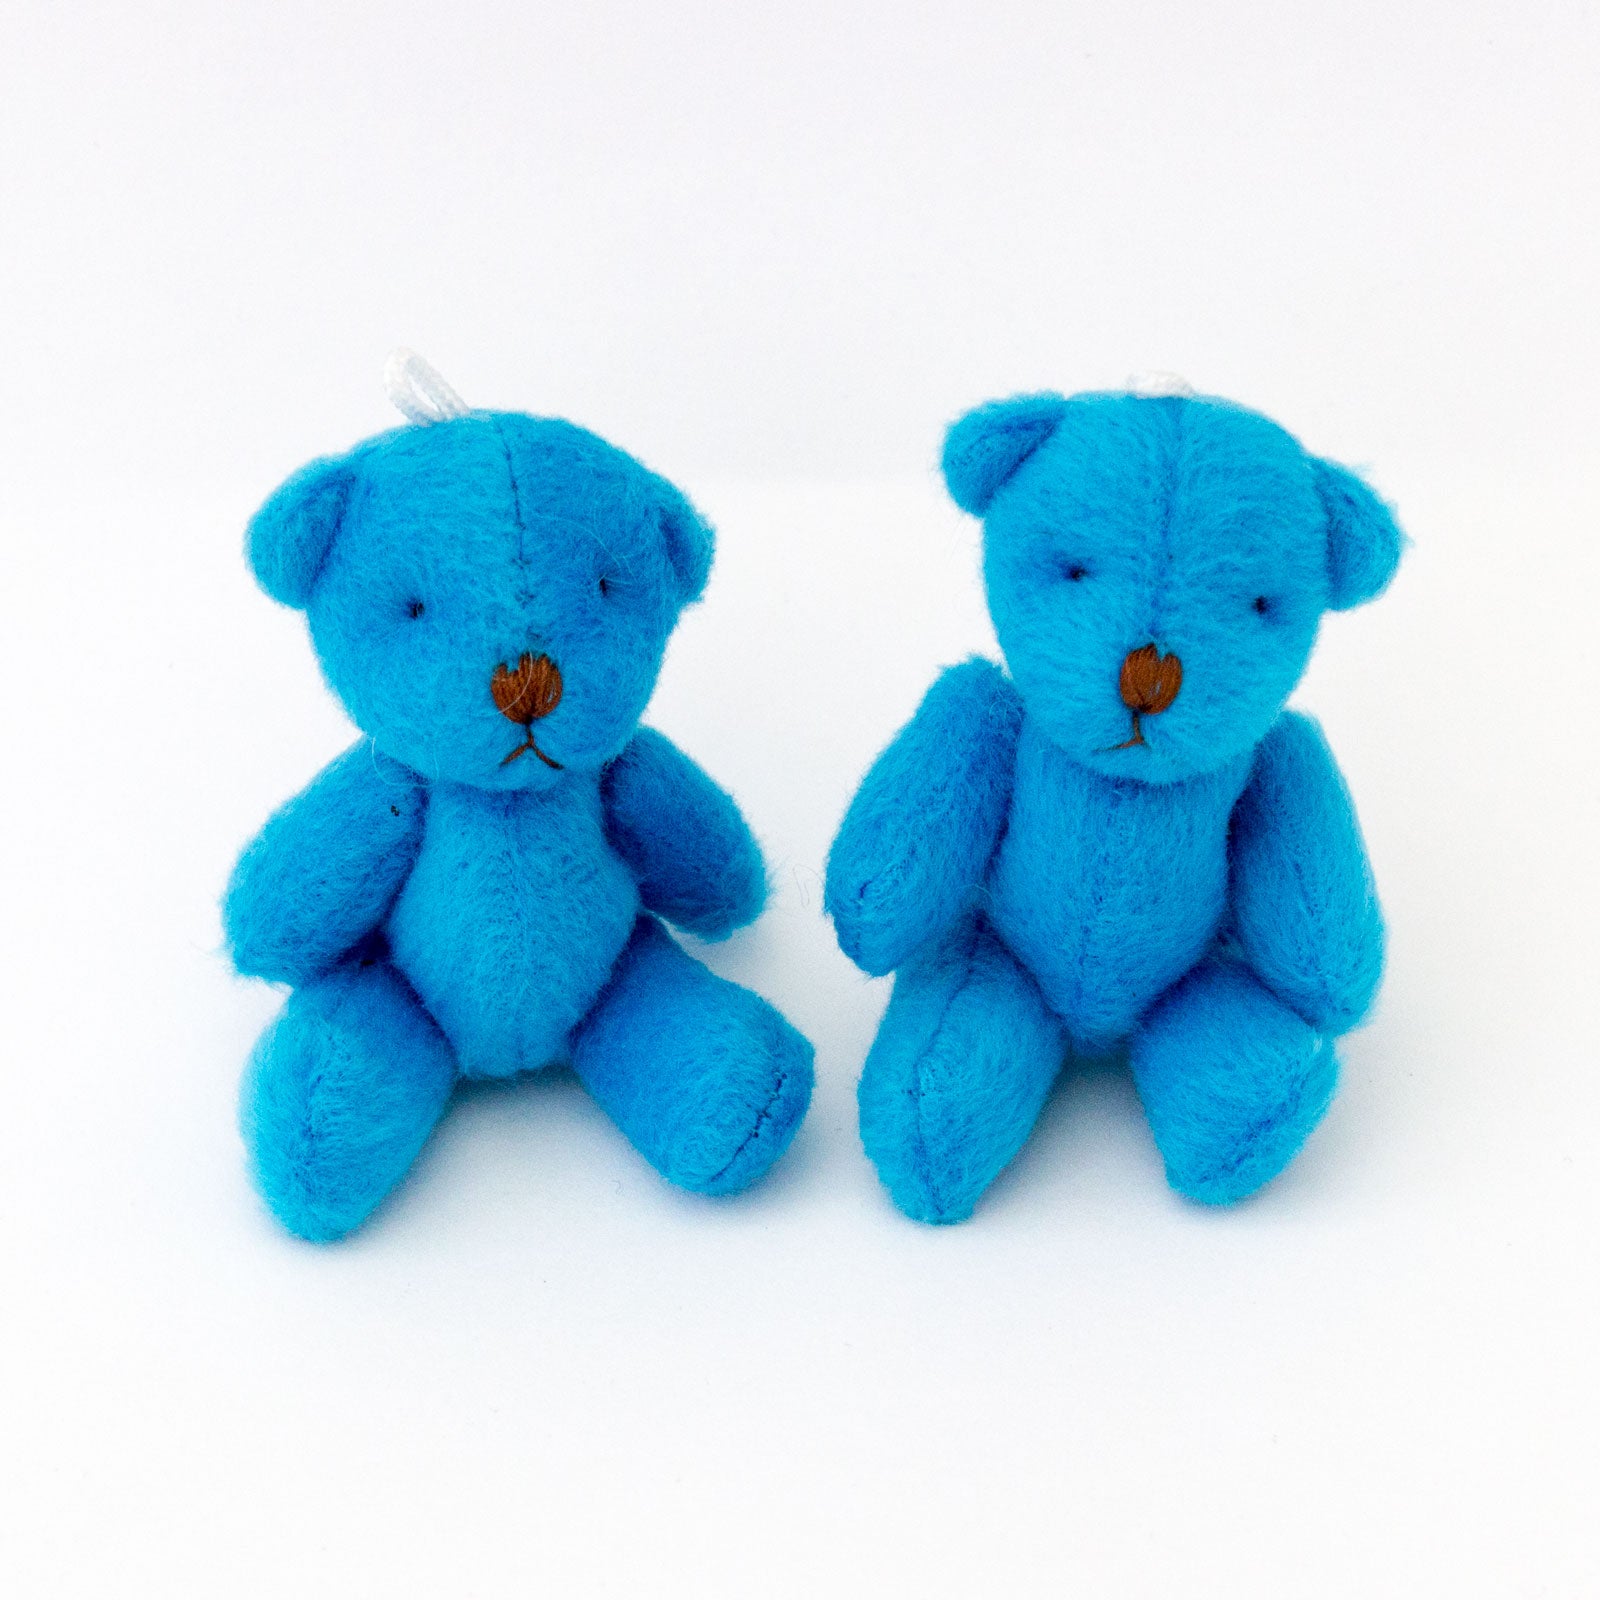 Small BLUE Teddy Bears X 85 - Cute Soft Adorable